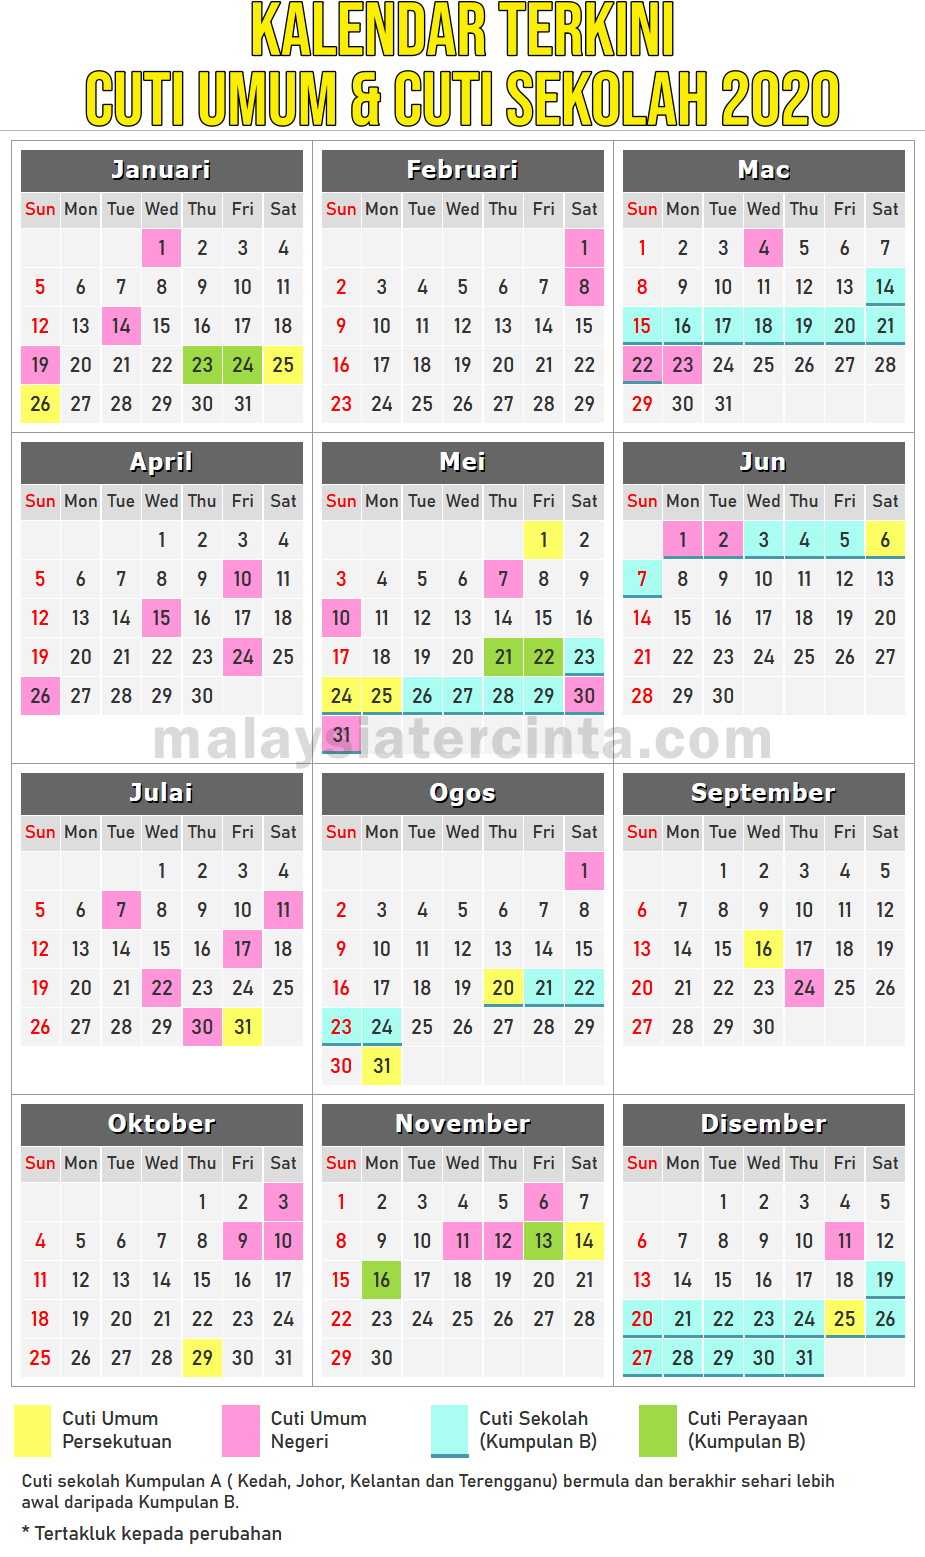 Kalendar Cuti Umum Dan Cuti Sekolah 2020 Terkini